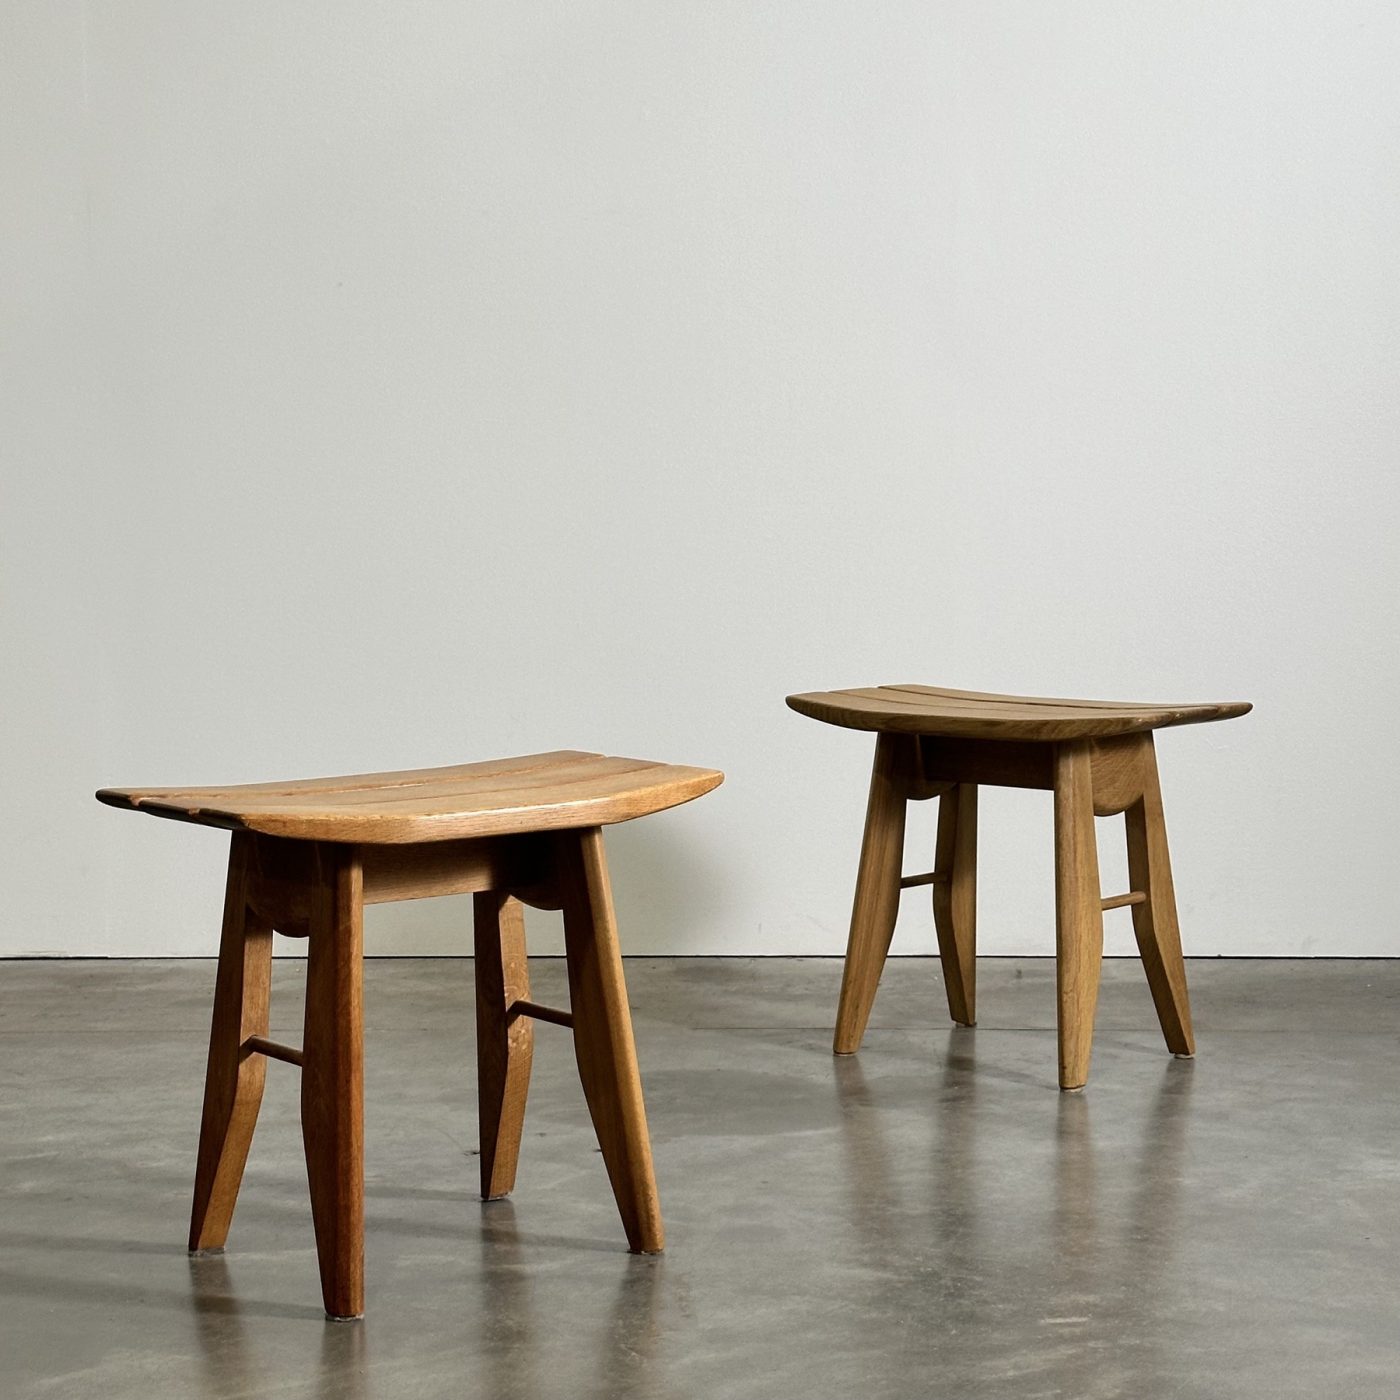 objet-vagabond-guillerme-stools0004